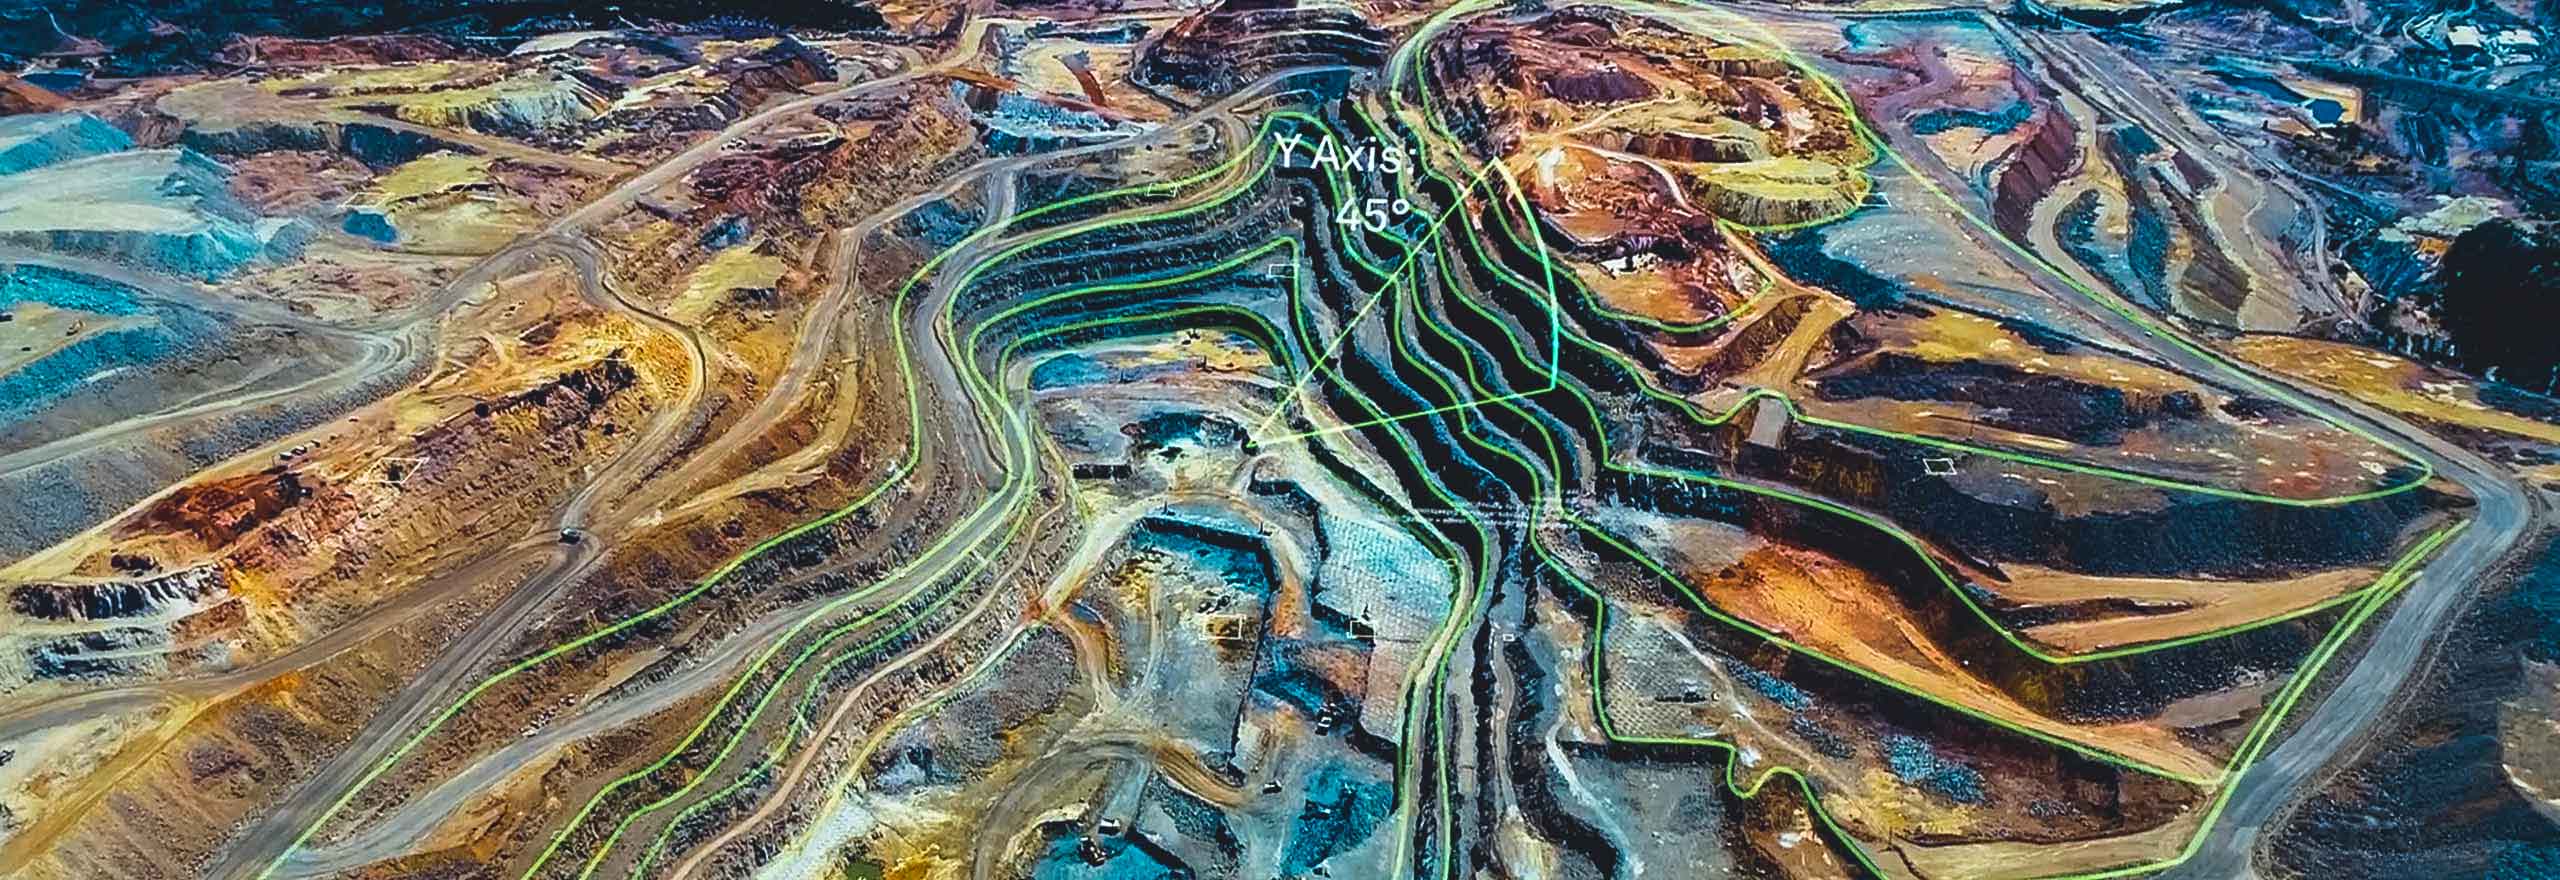 Uma vista aérea de uma mina sobreposta com elementos digitais que representam análises